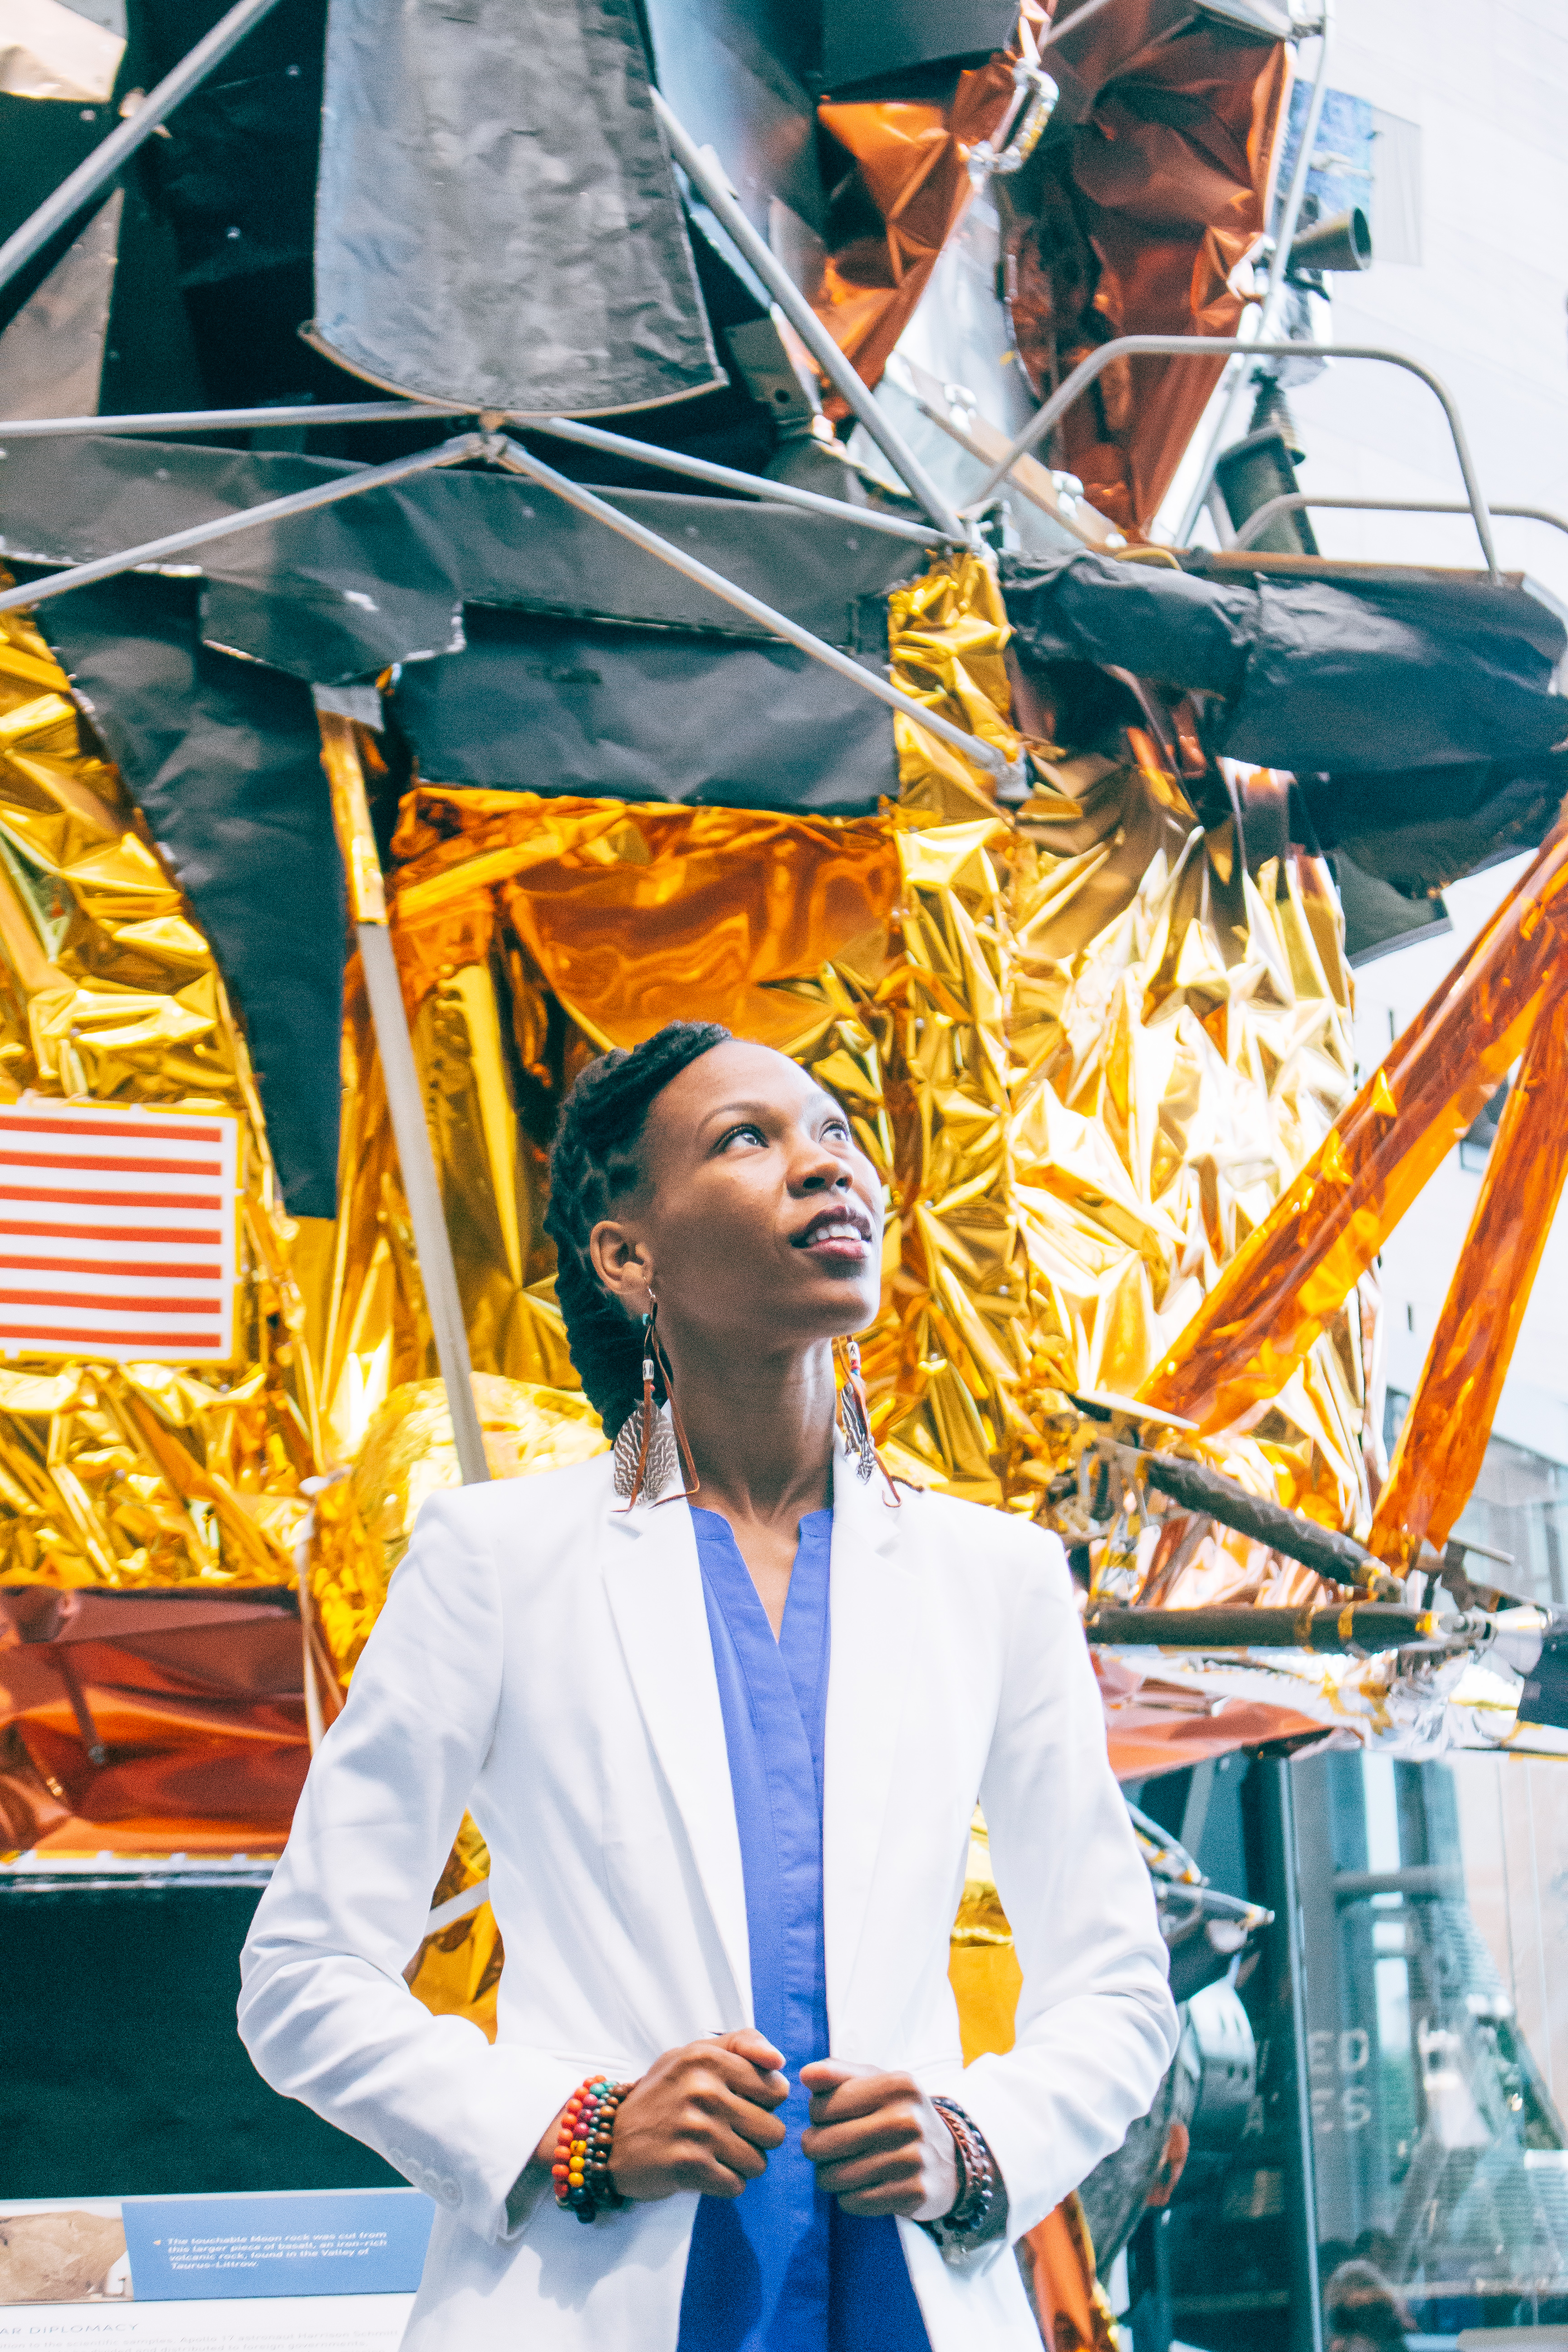 Γυναίκα μηχανικός της NASA σχεδιάζει fun & elegant διαστημικές στολές για γυναίκες